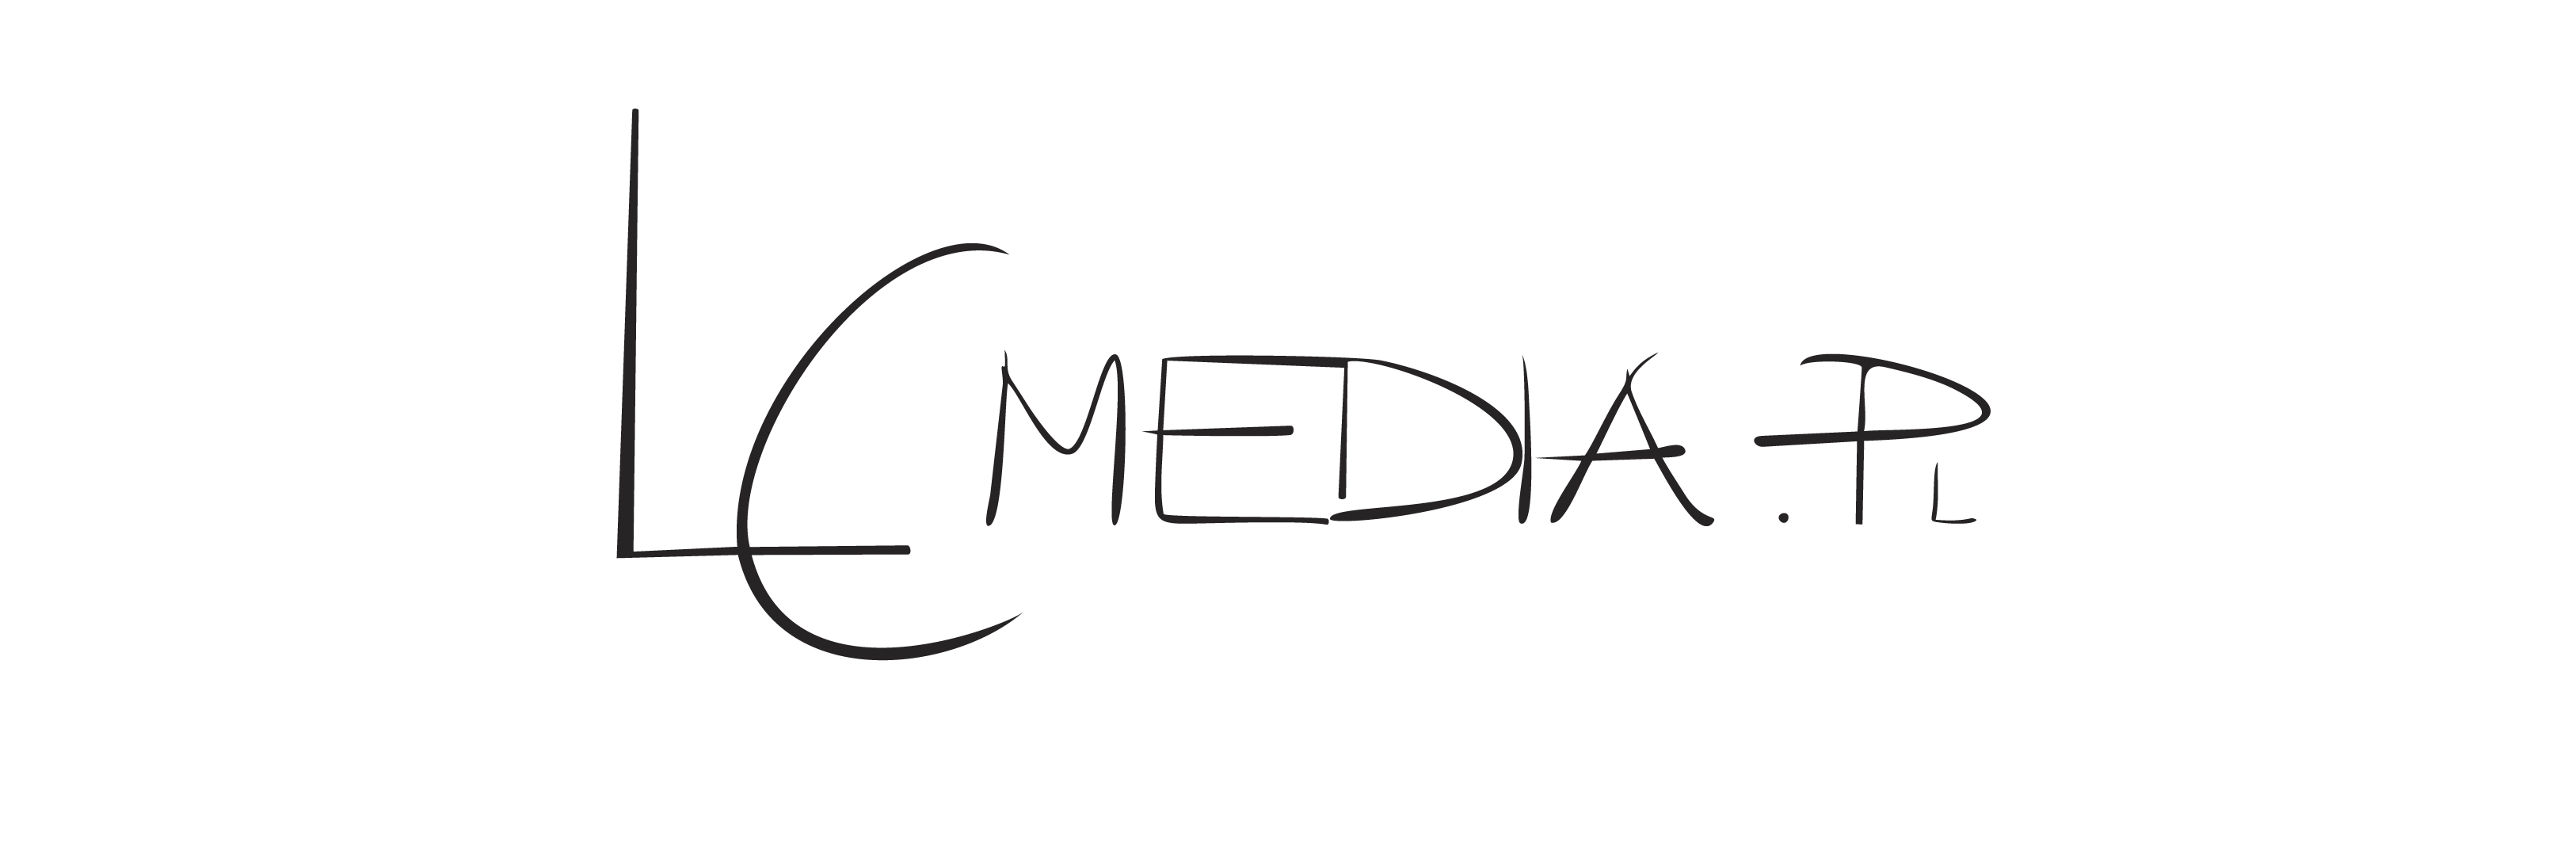 LCMedia